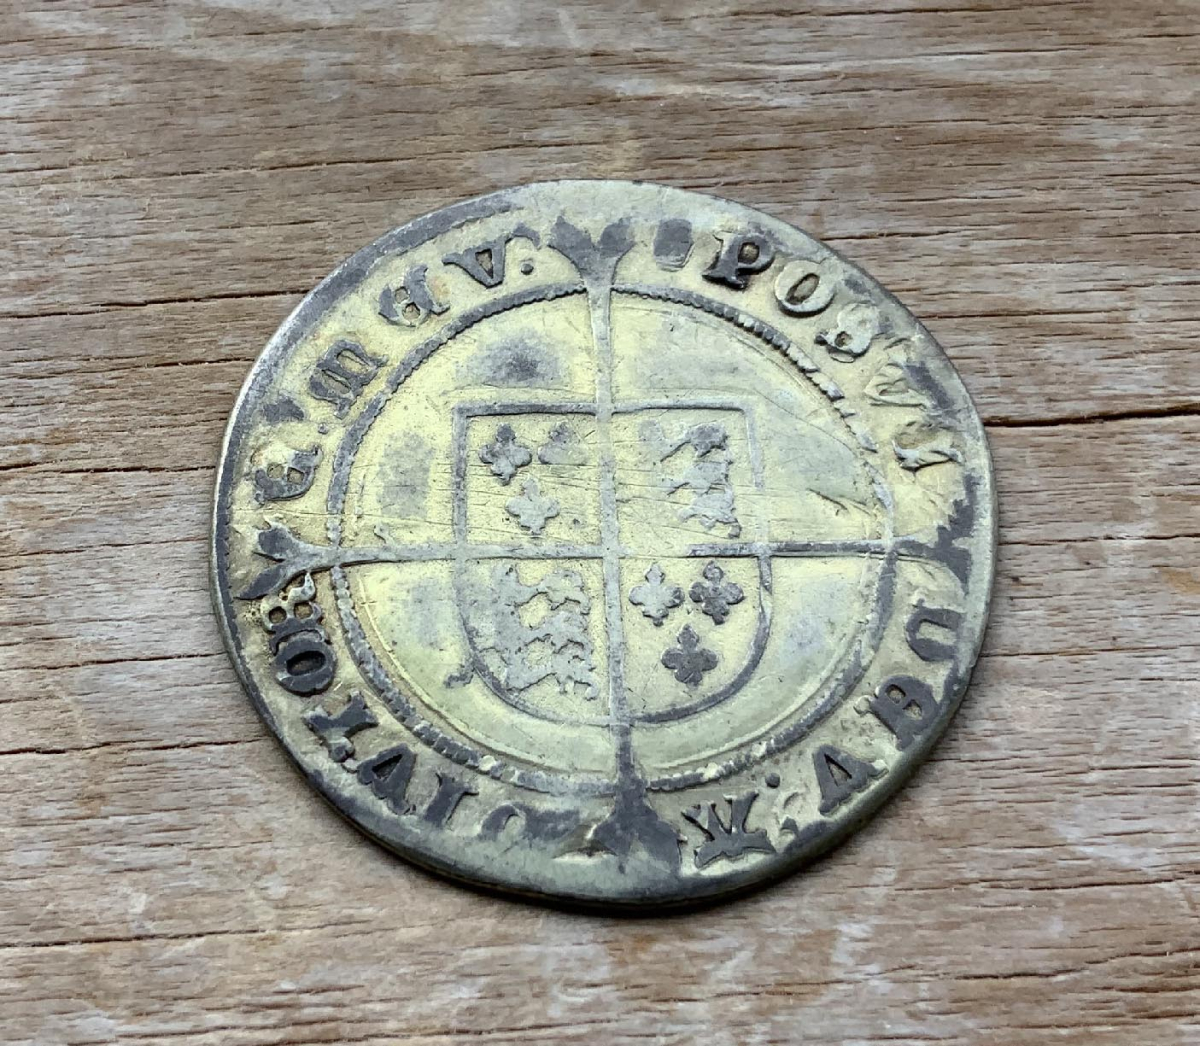 Rare 1551-1553 Edward VI of England Shilling coin C338